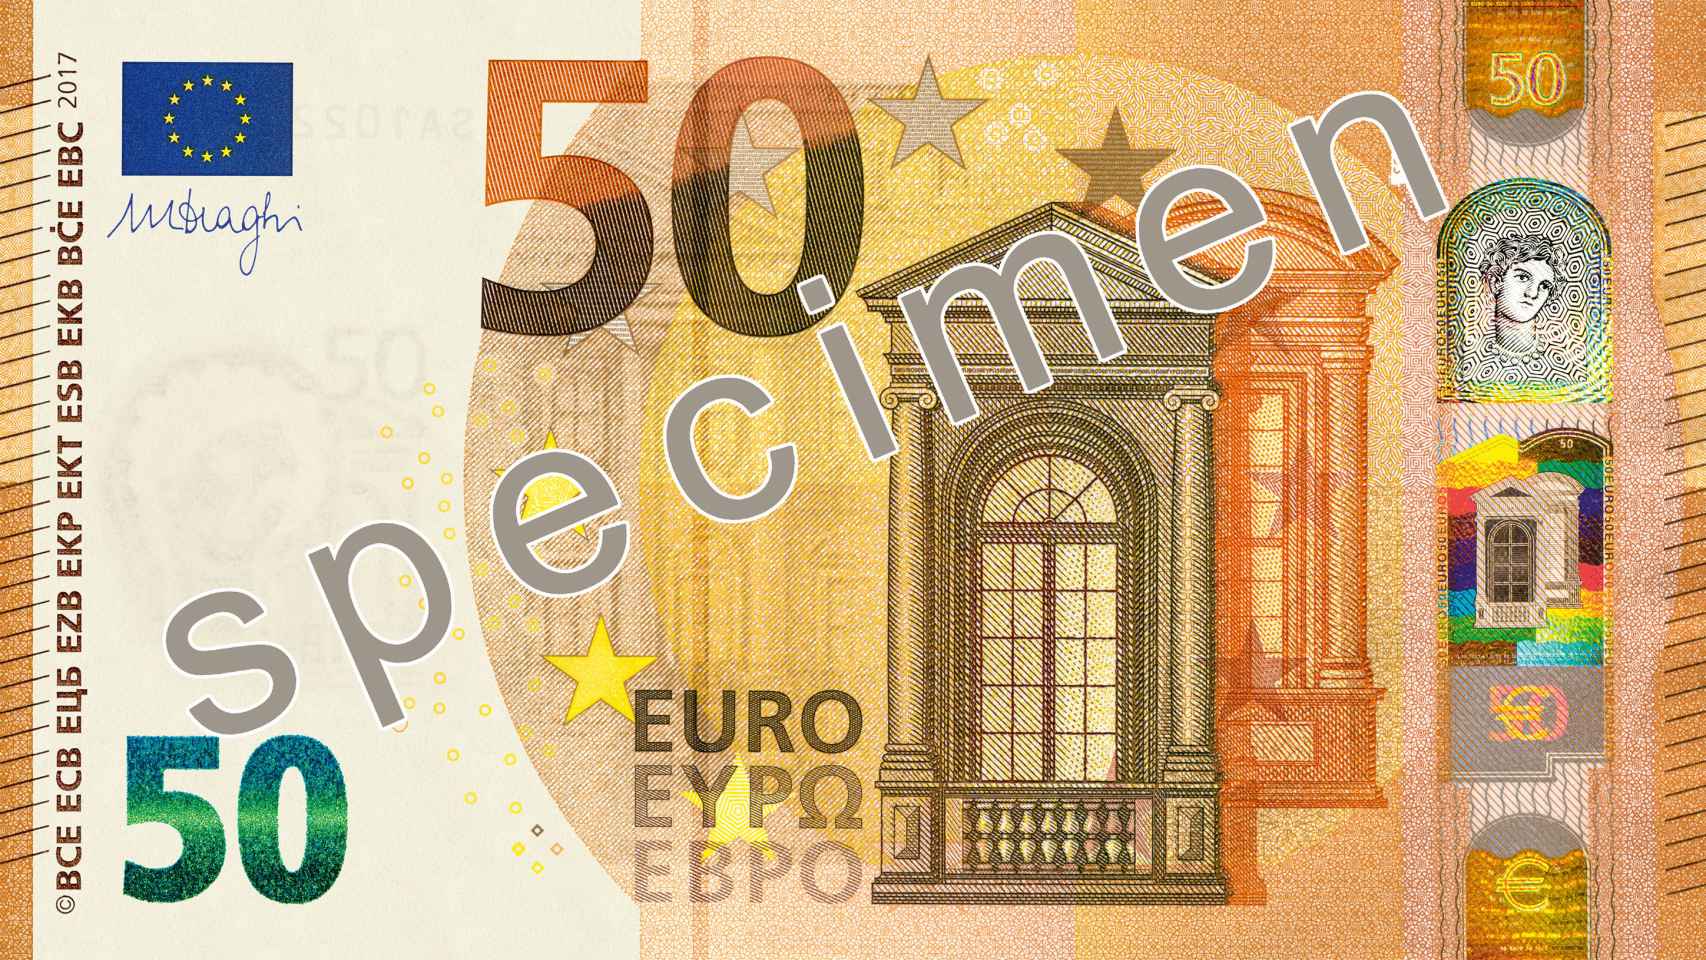 Nuevo billete de 50 euros.